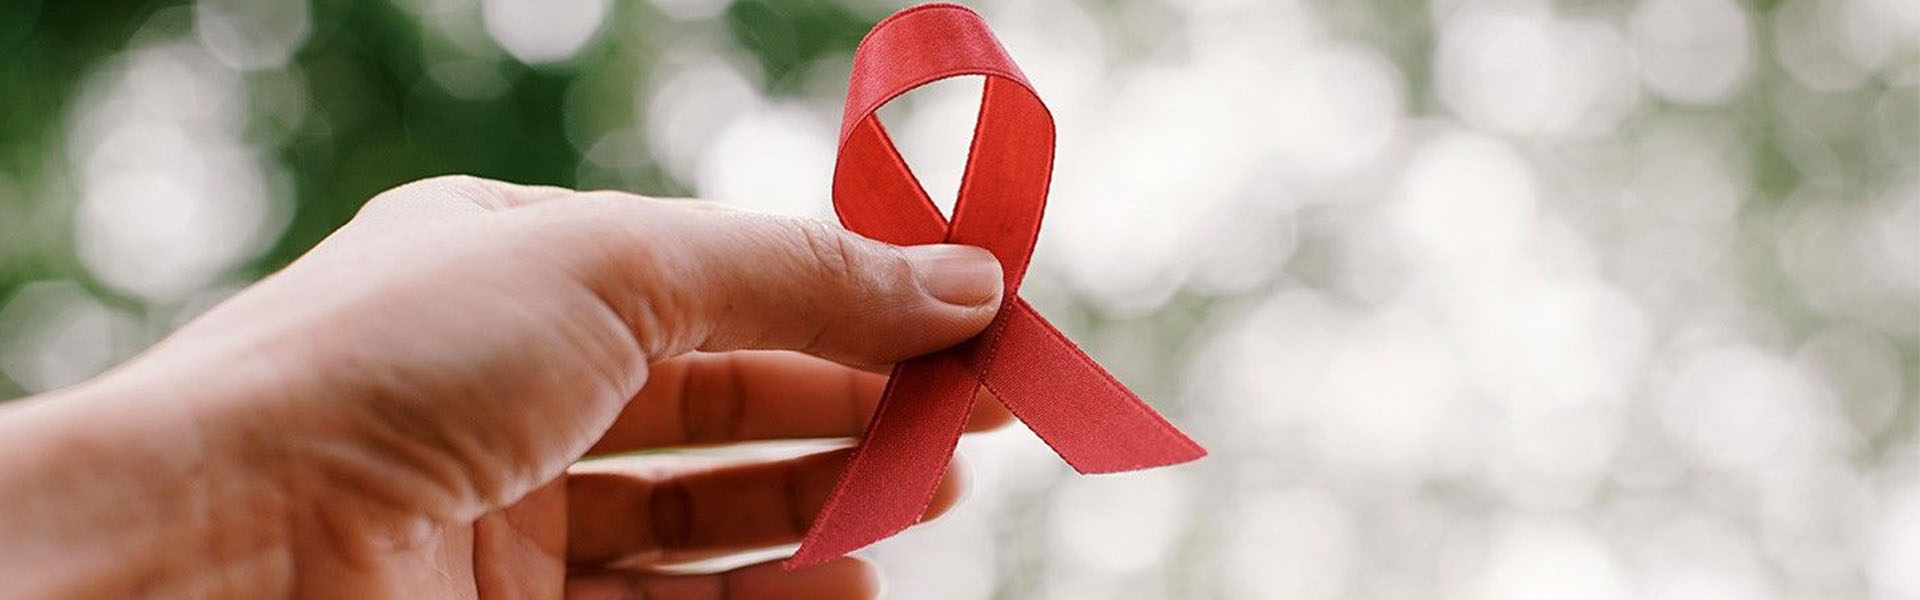 علائم ایدز و نحوه پیشگیری از ابتلا به آن|Symptoms of AIDS